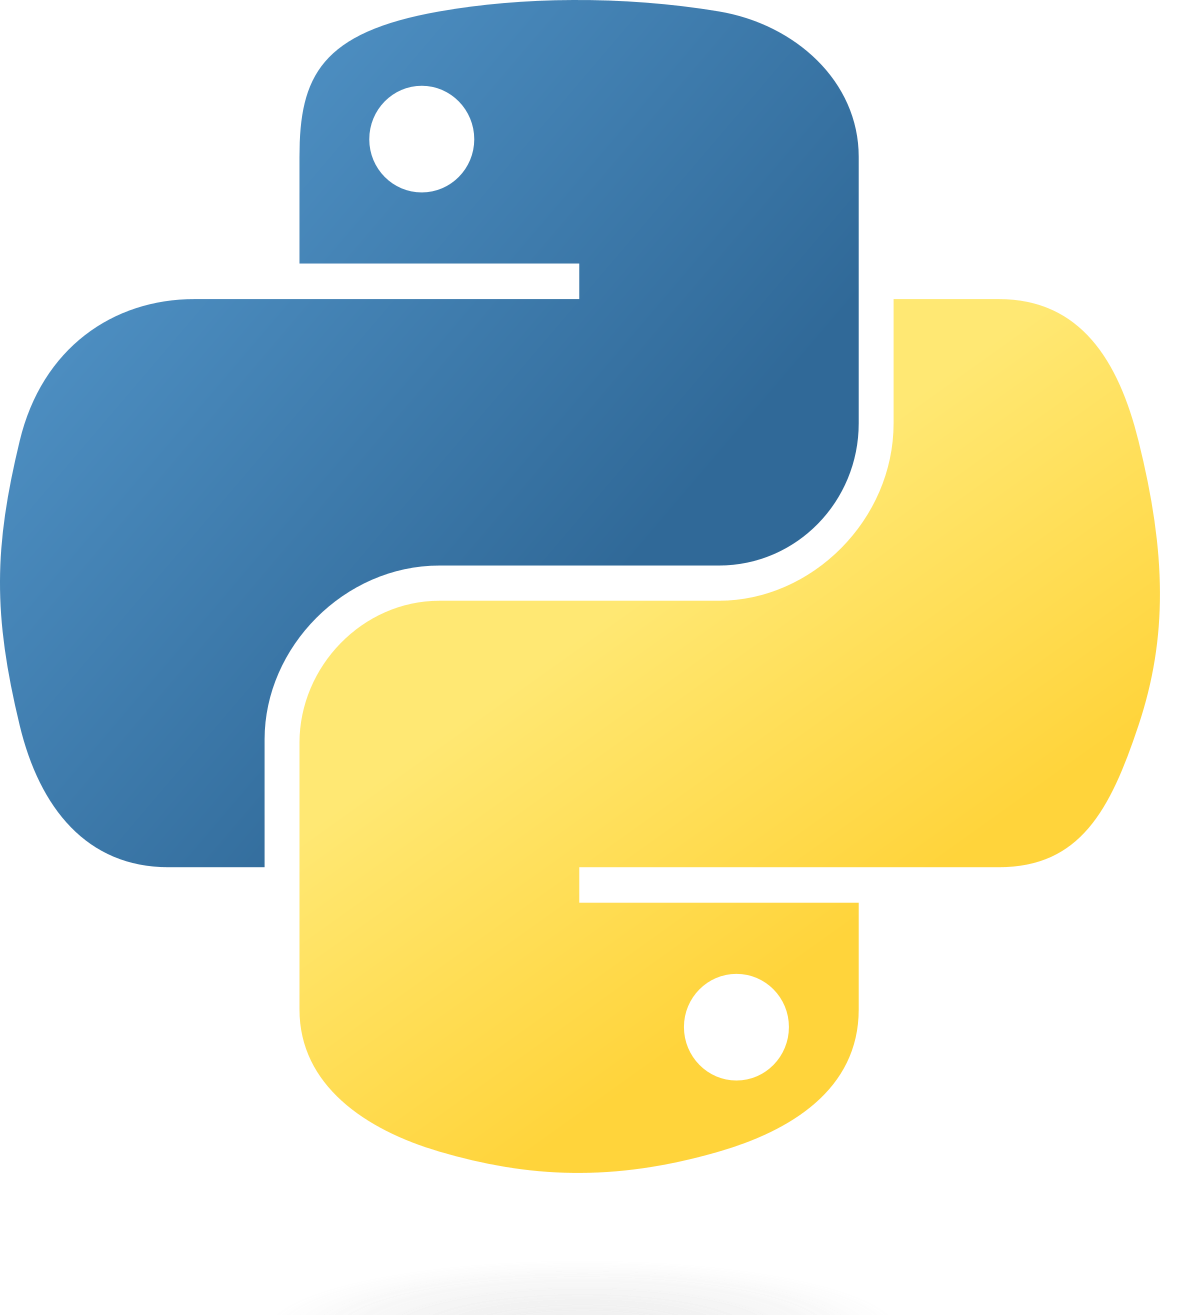 Python developer @ aitrich